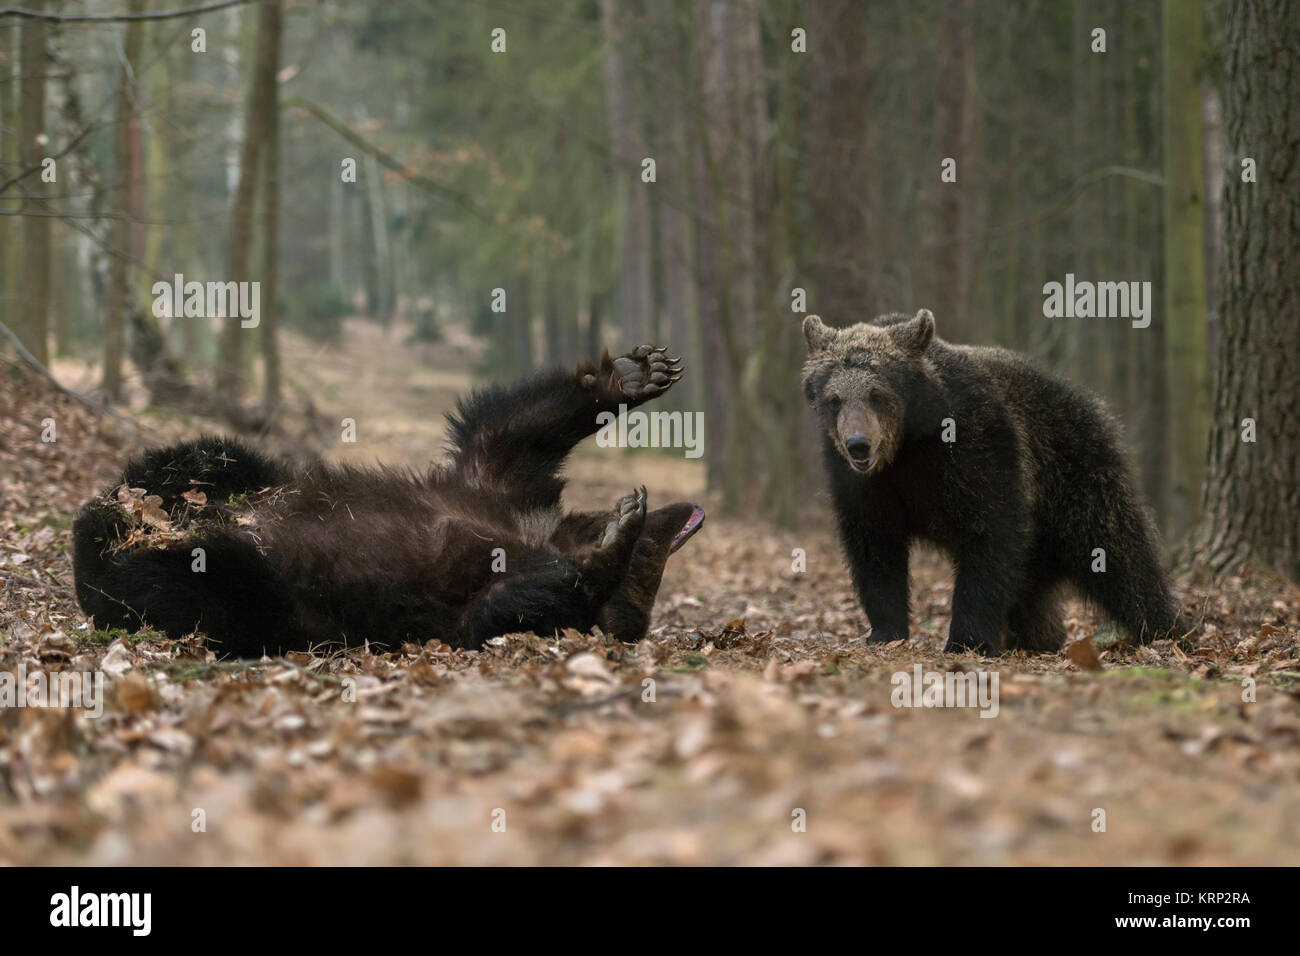 Brauner Bär/Bären (Ursus arctos), jungen Jungen, Geschwister, Jugendliche, zusammen spielen in trockenem Laub von einem herbstlichen Mischwald, Europa. Stockfoto